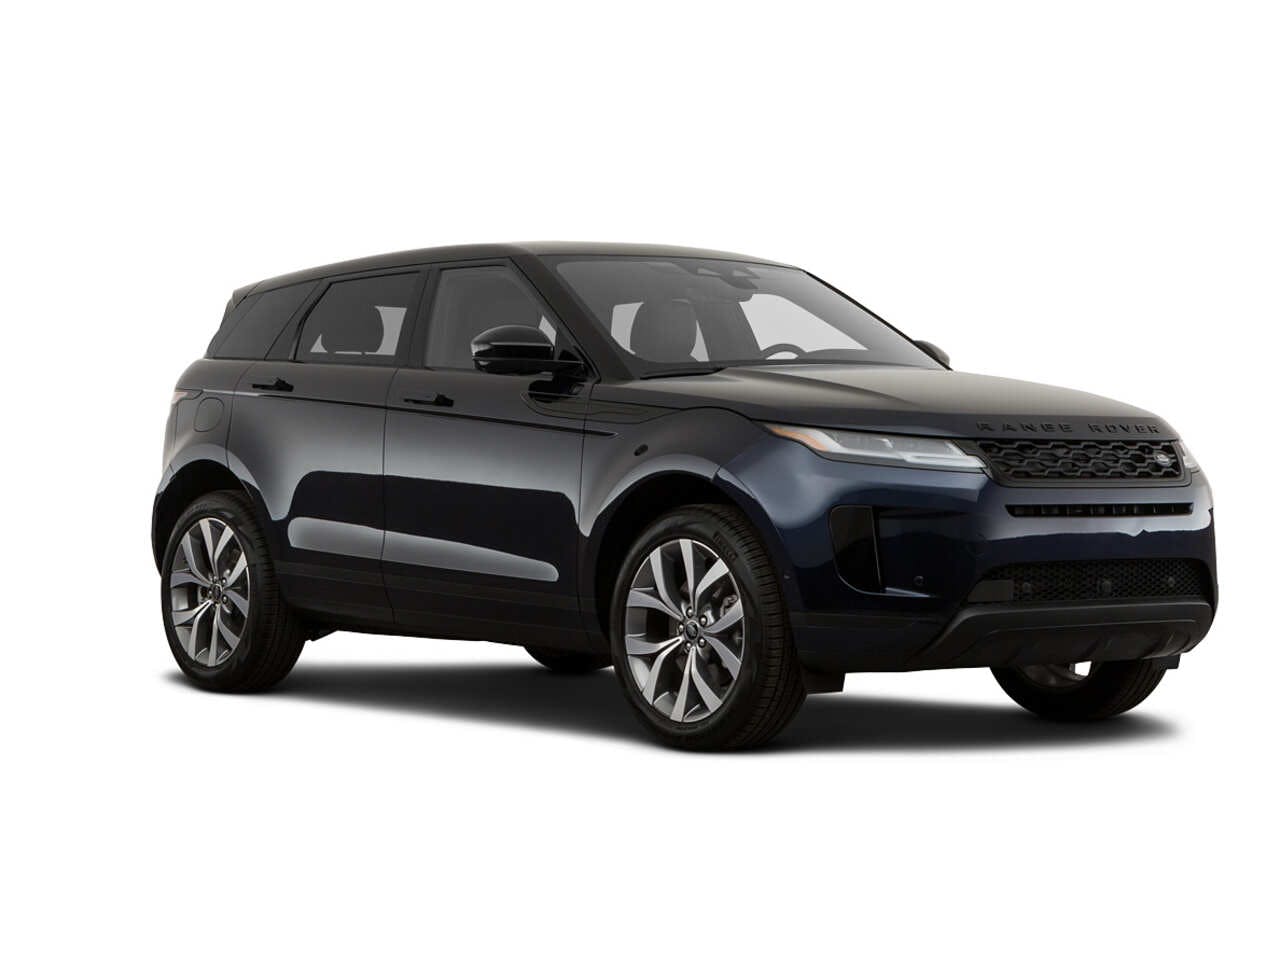 2021 Land Rover Range Rover Evoque Review